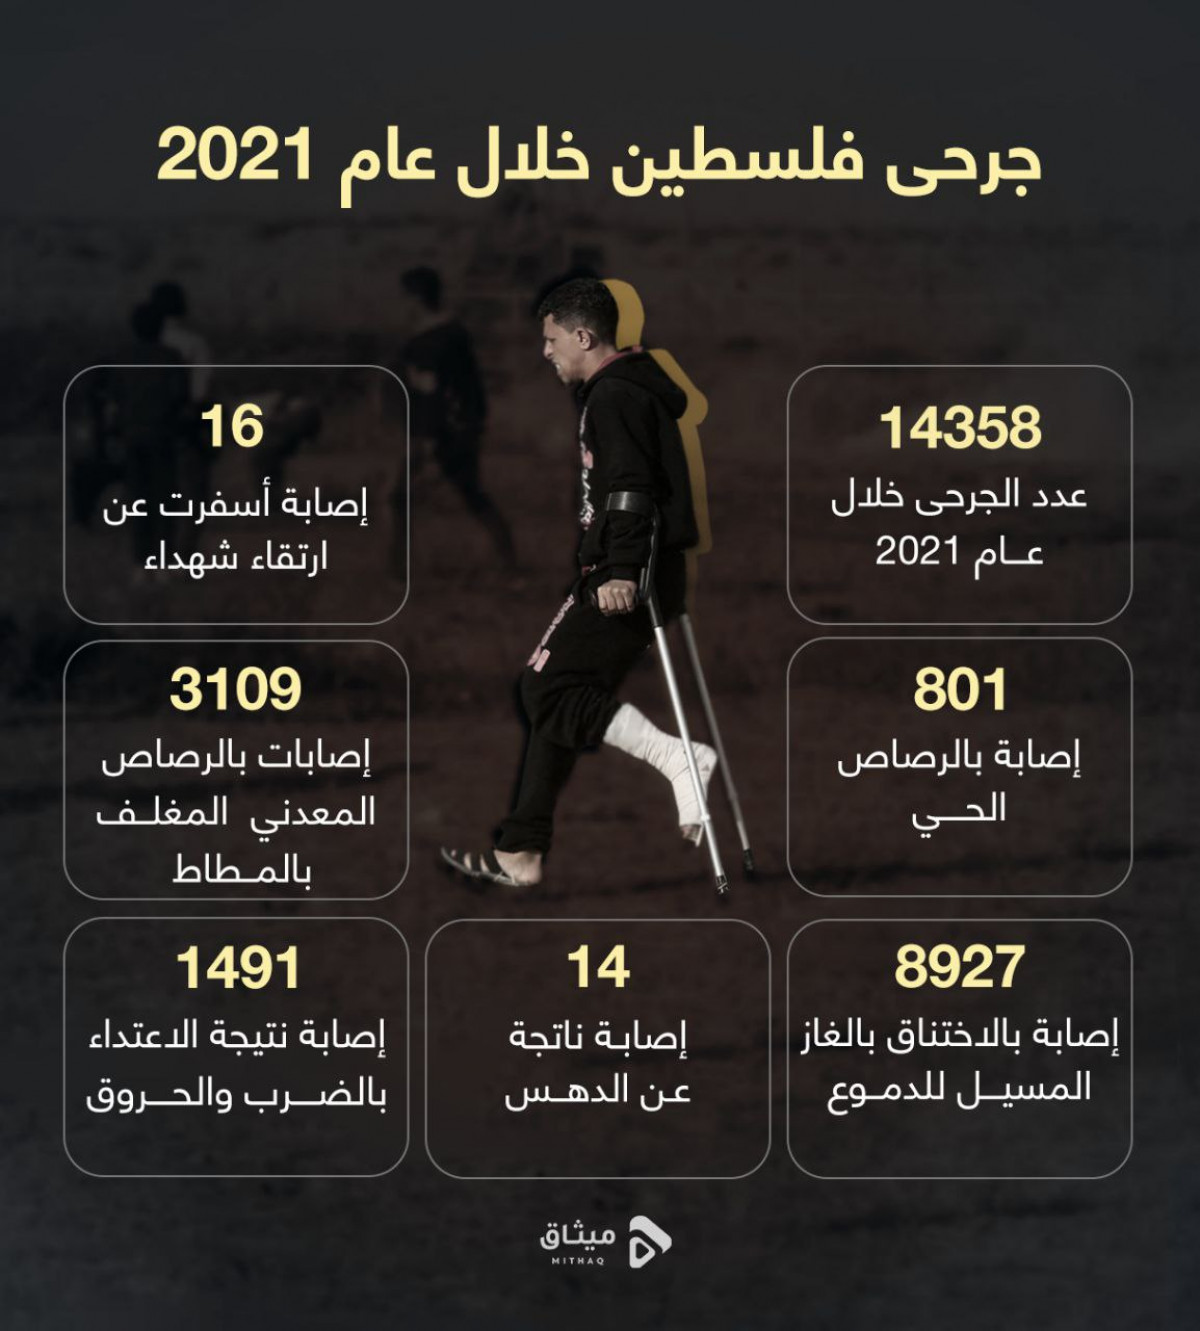 انفوجرافيك / جرحى فلسطين خلال عام 2021